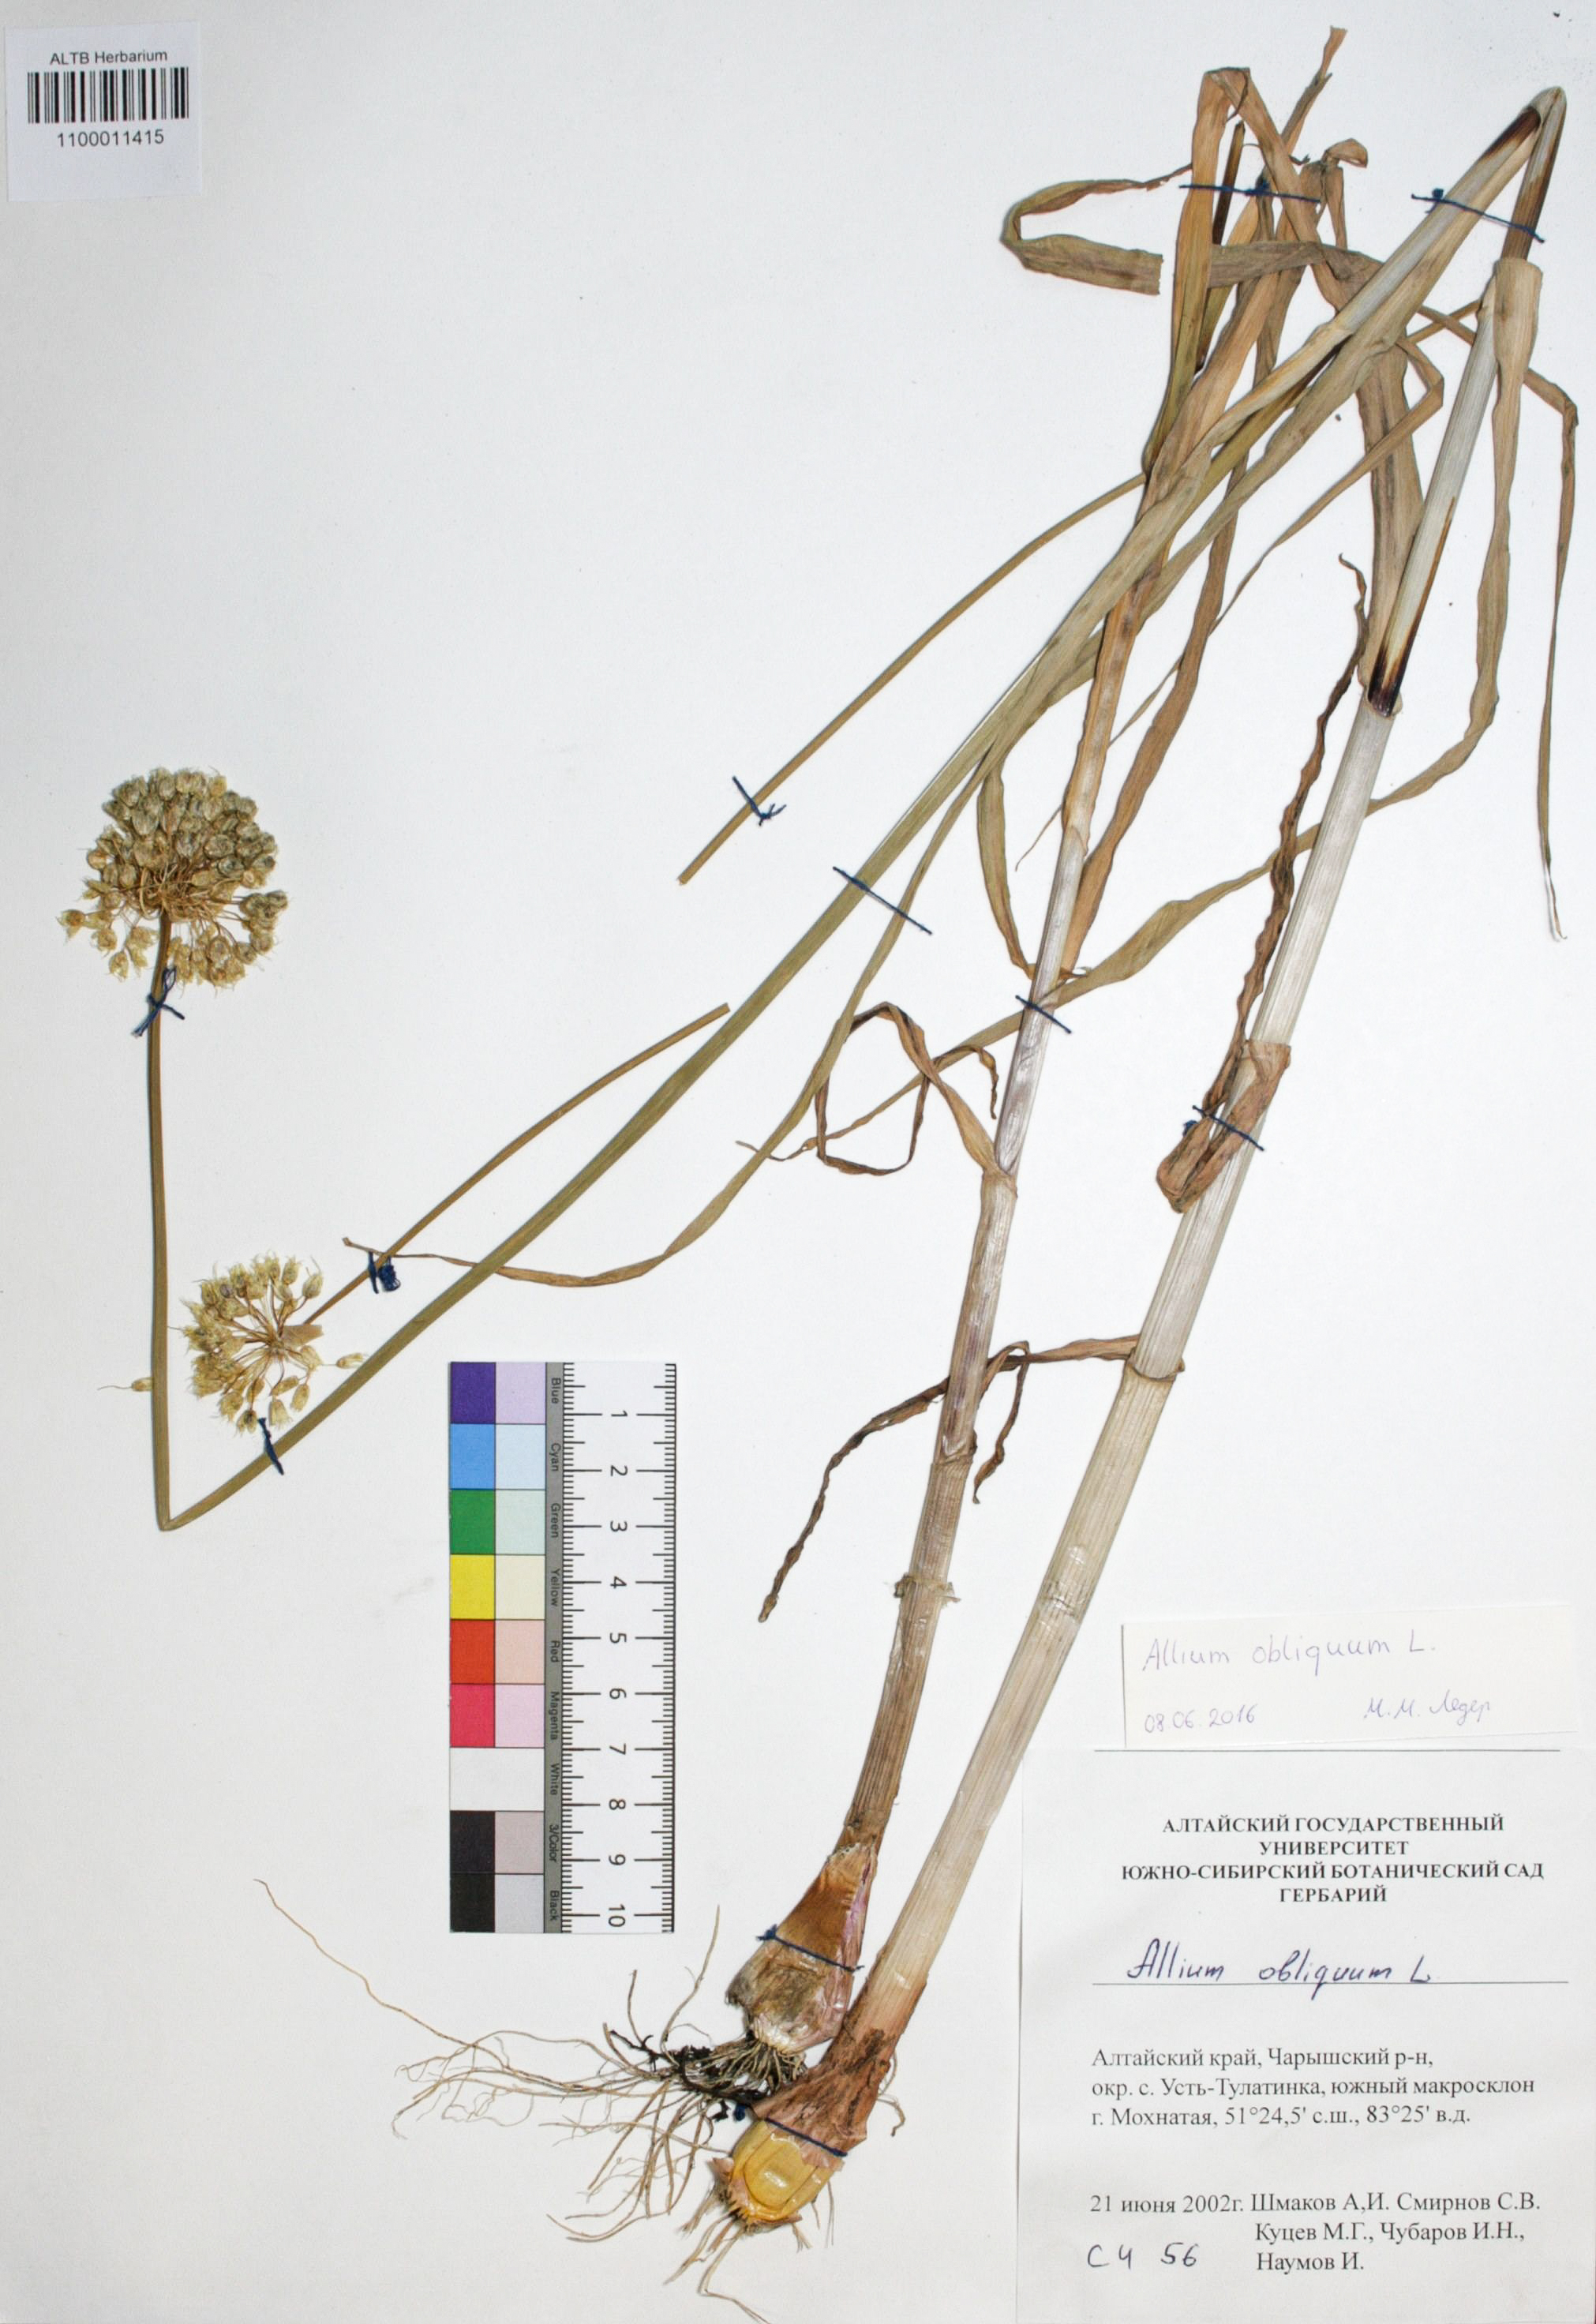 Allium obliquum L.